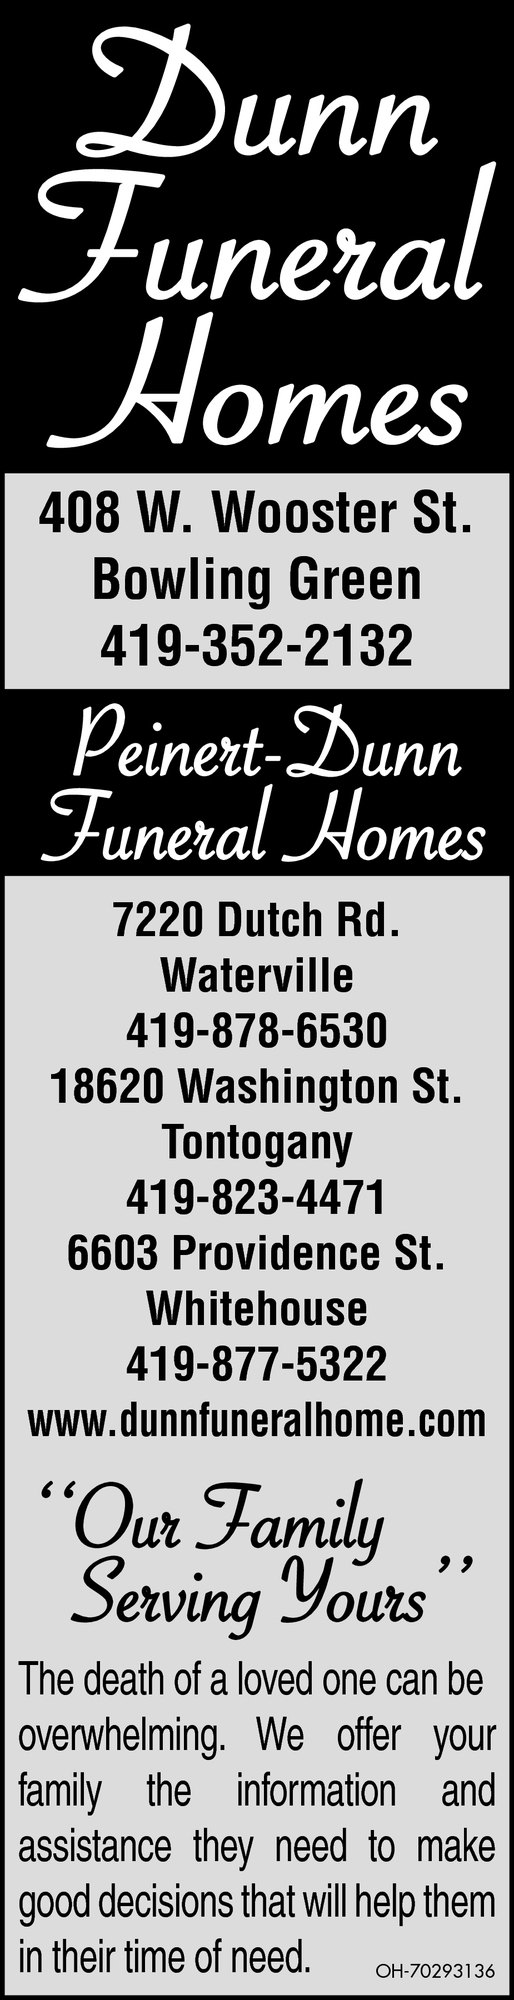 Peinert-Dunn Funeral Homes